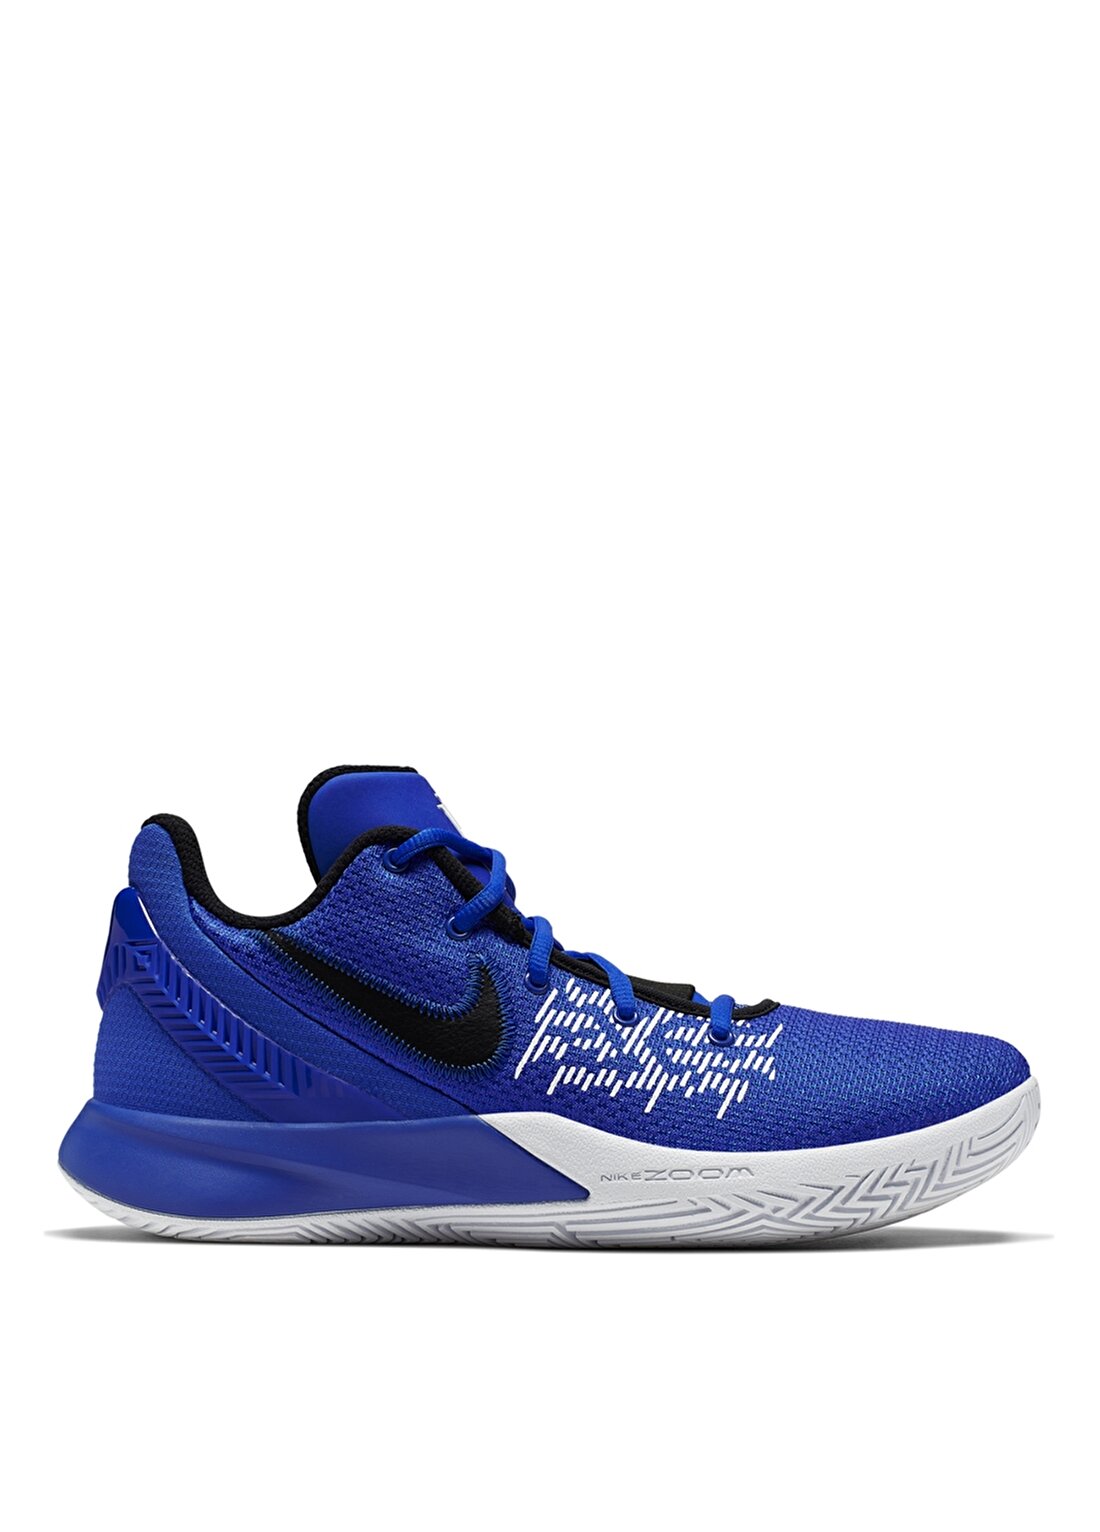 Nike Flytrap II Basketbol Ayakkabısı